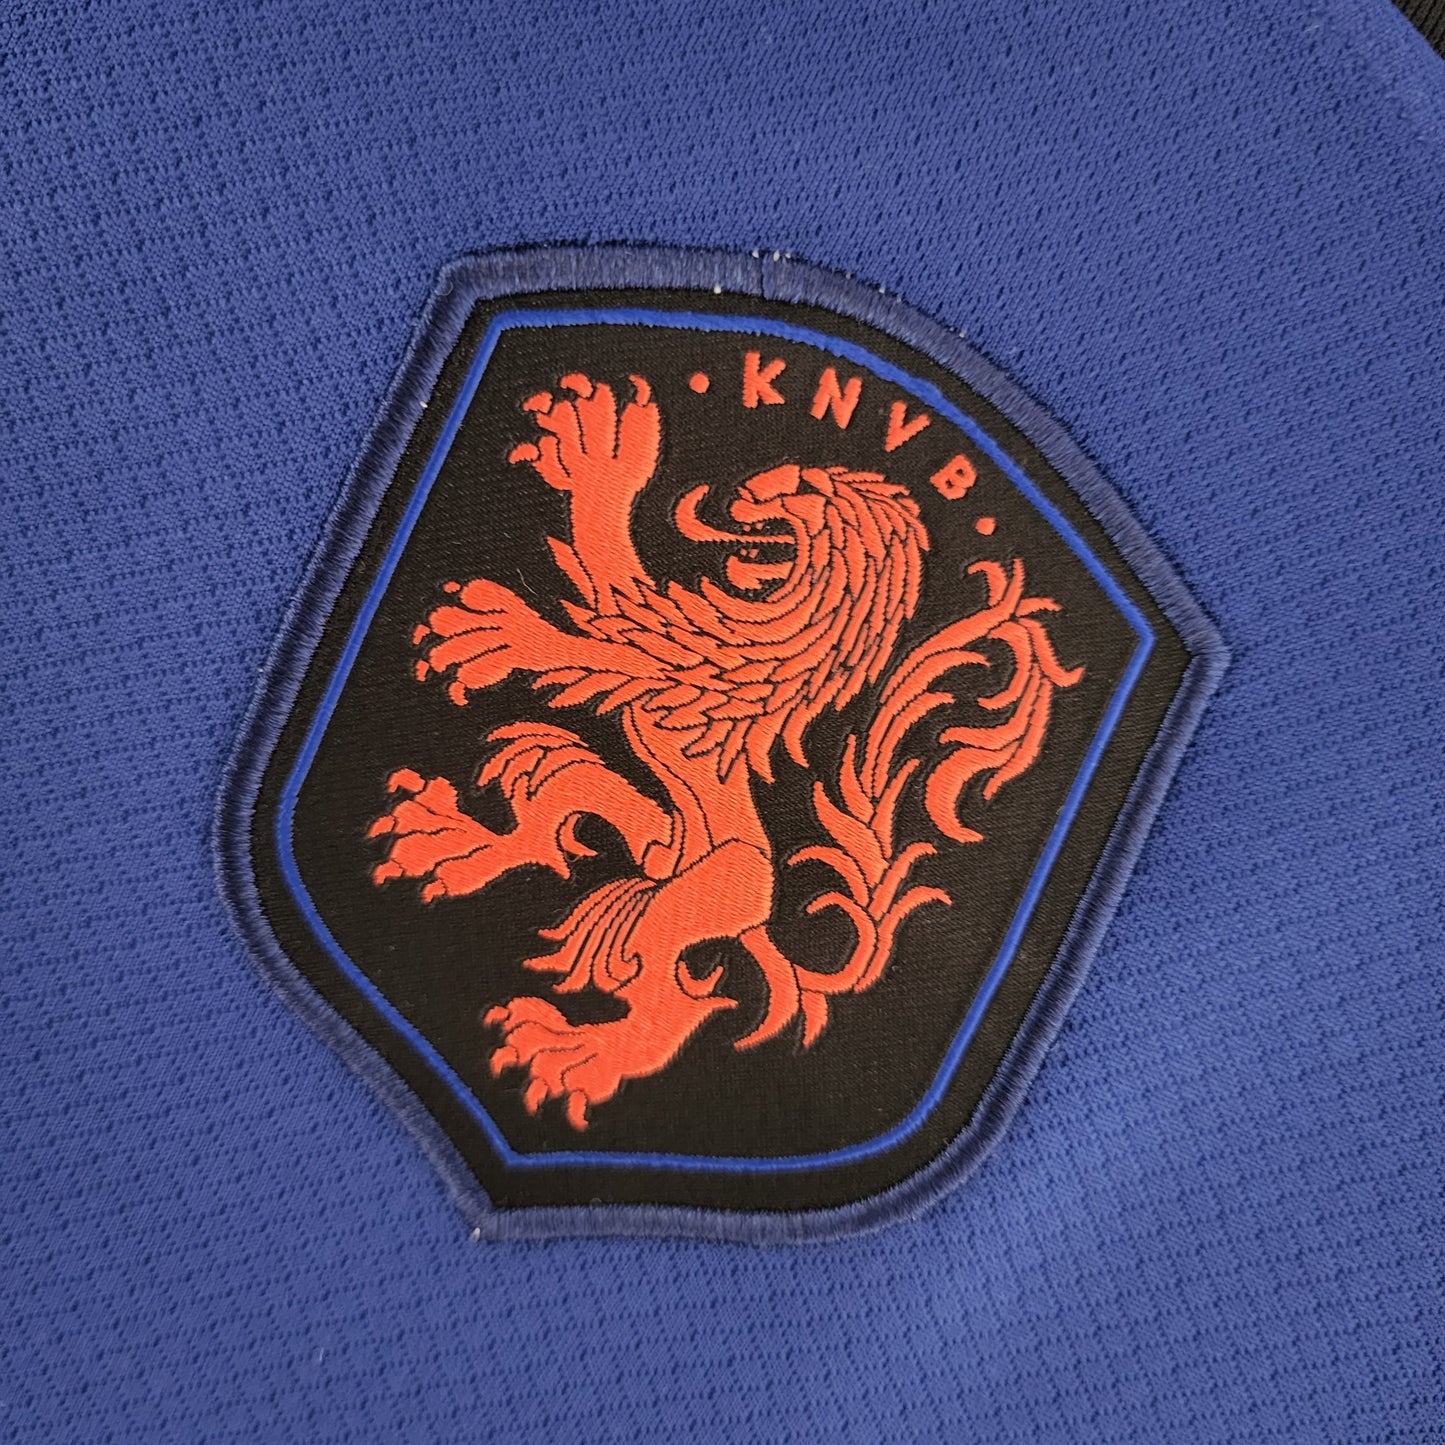 Camisa Torcedor Bélgica Home Copa do Mundo 2022